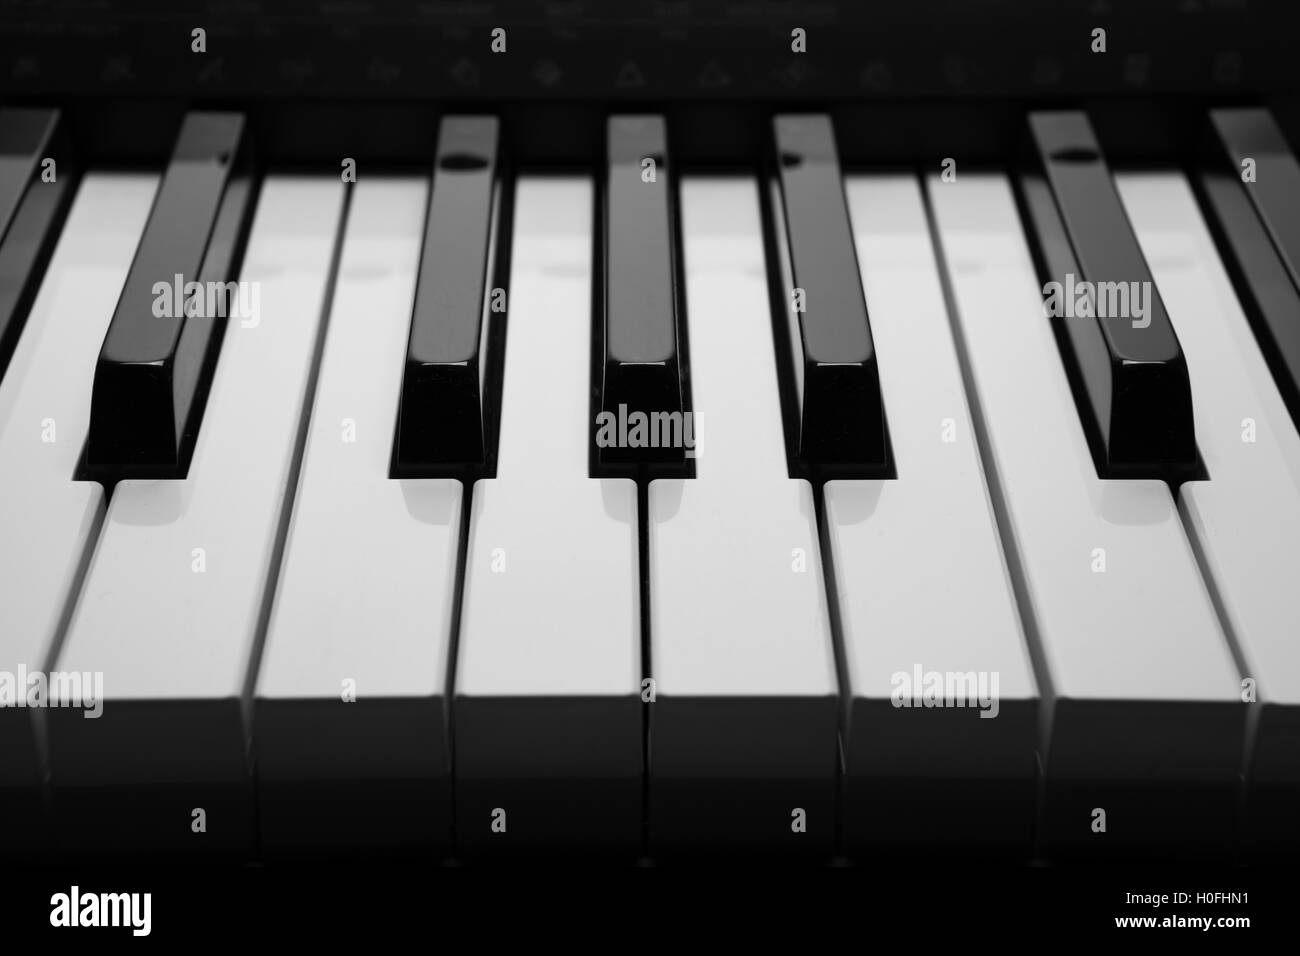 Piano action e imágenes alta resolución - Página 10 - Alamy